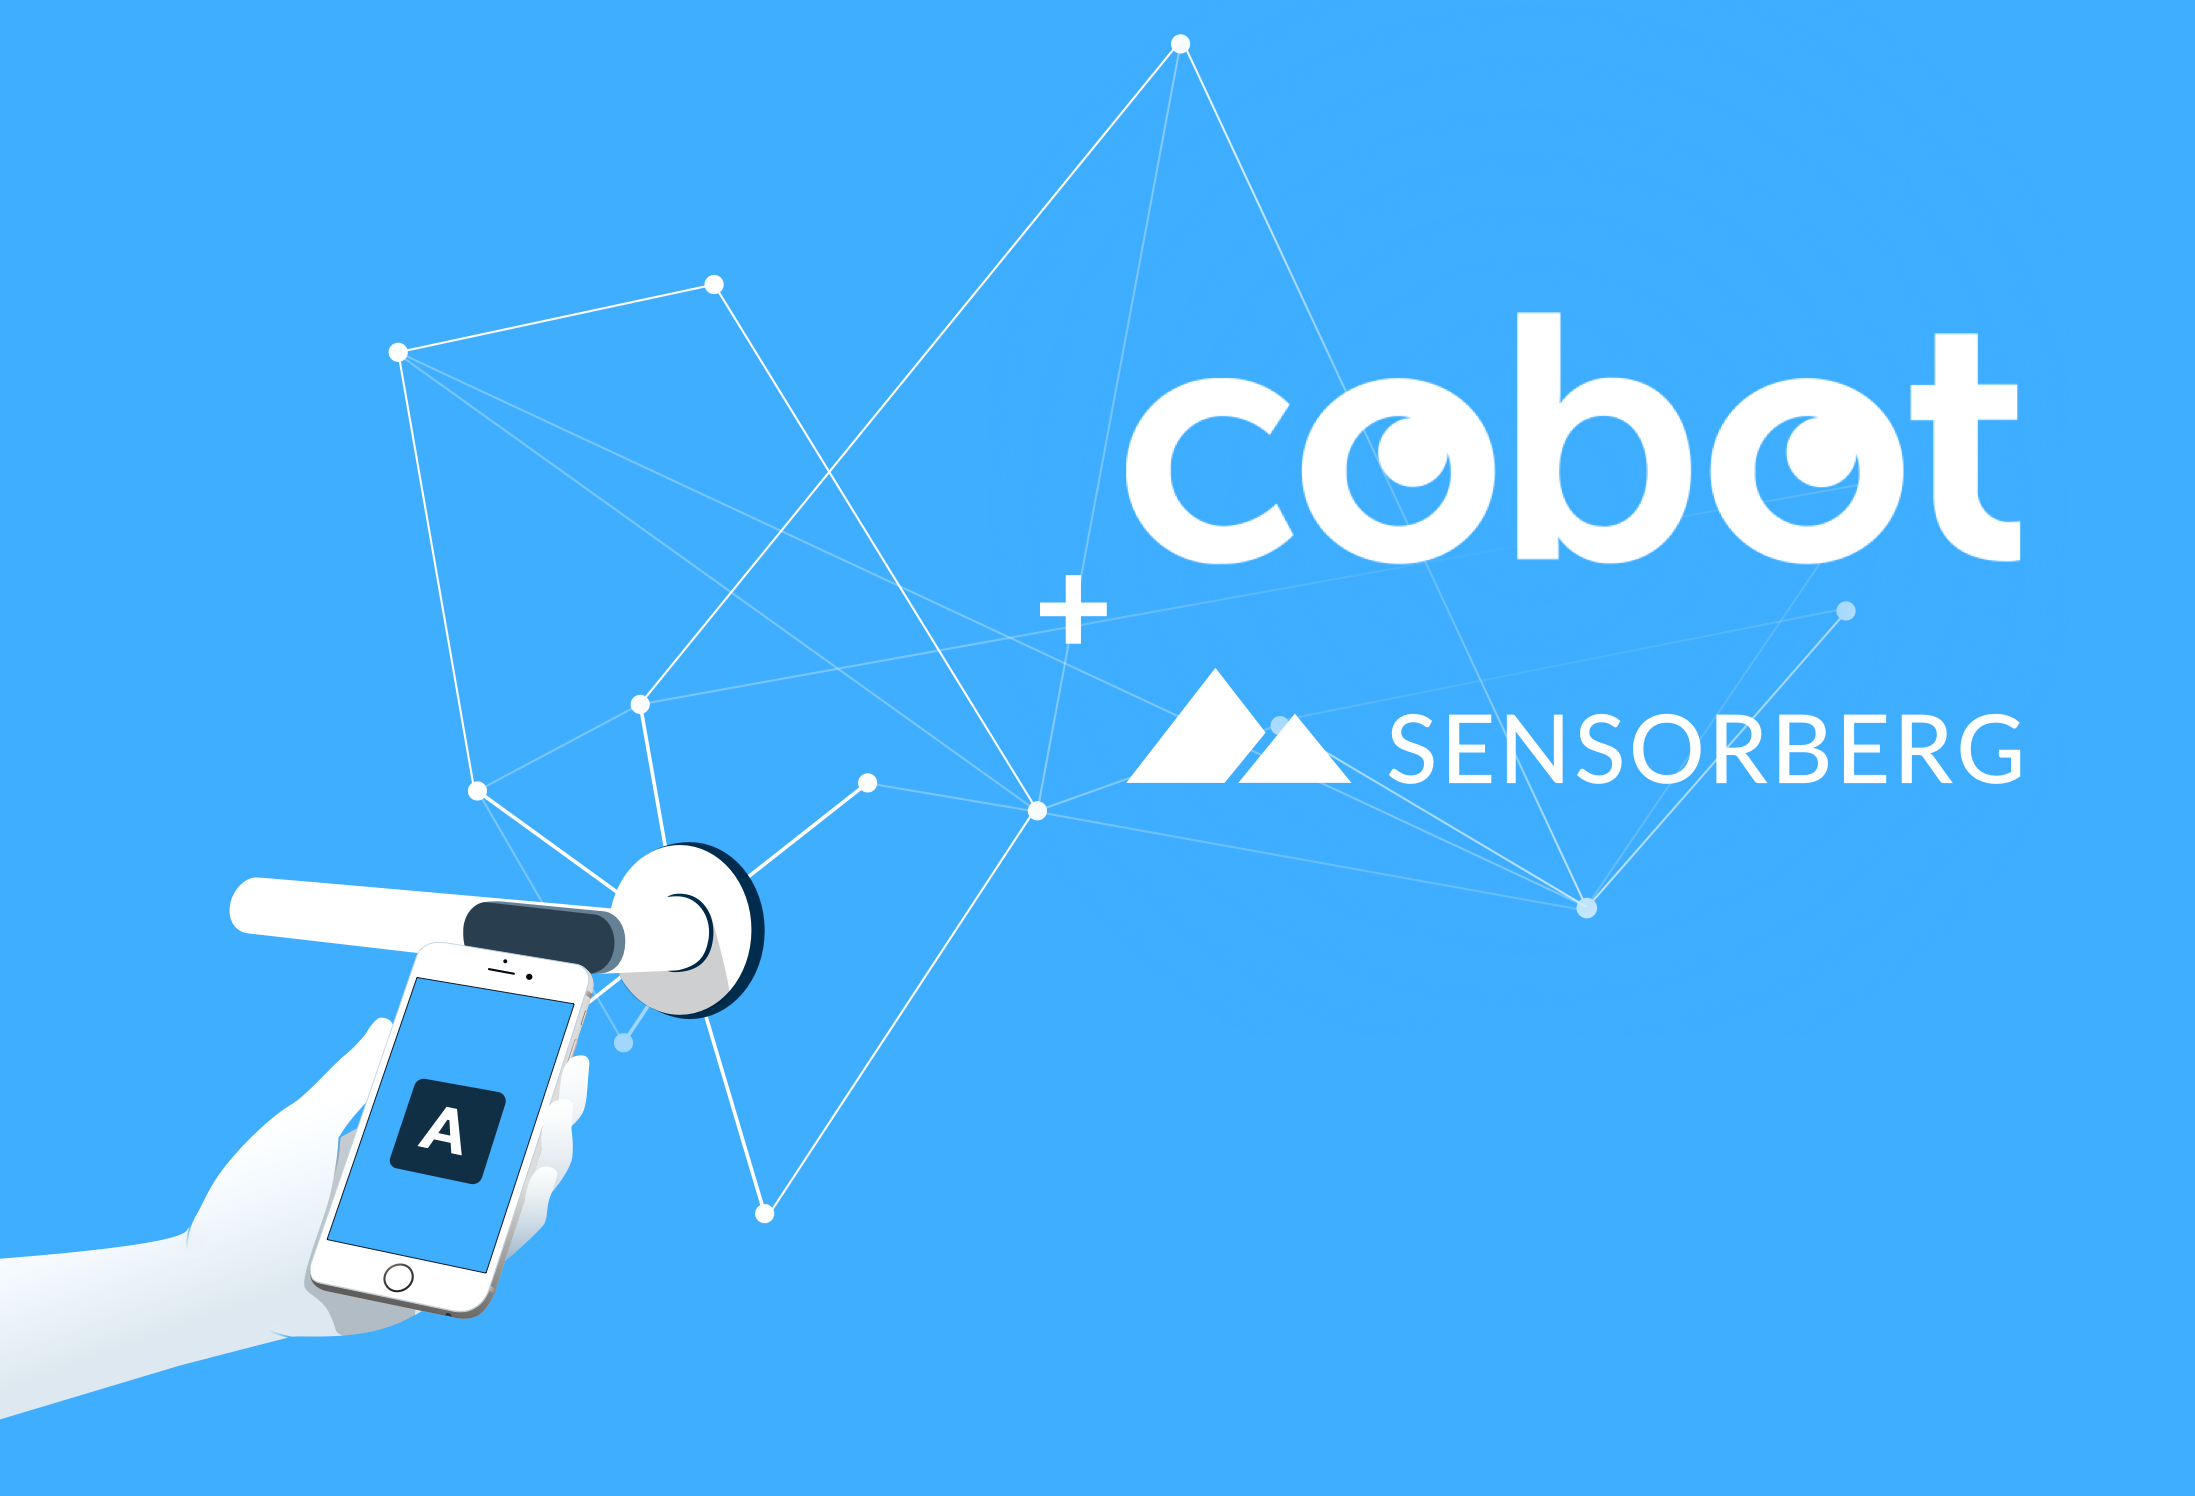 Cobot and Sensorberg